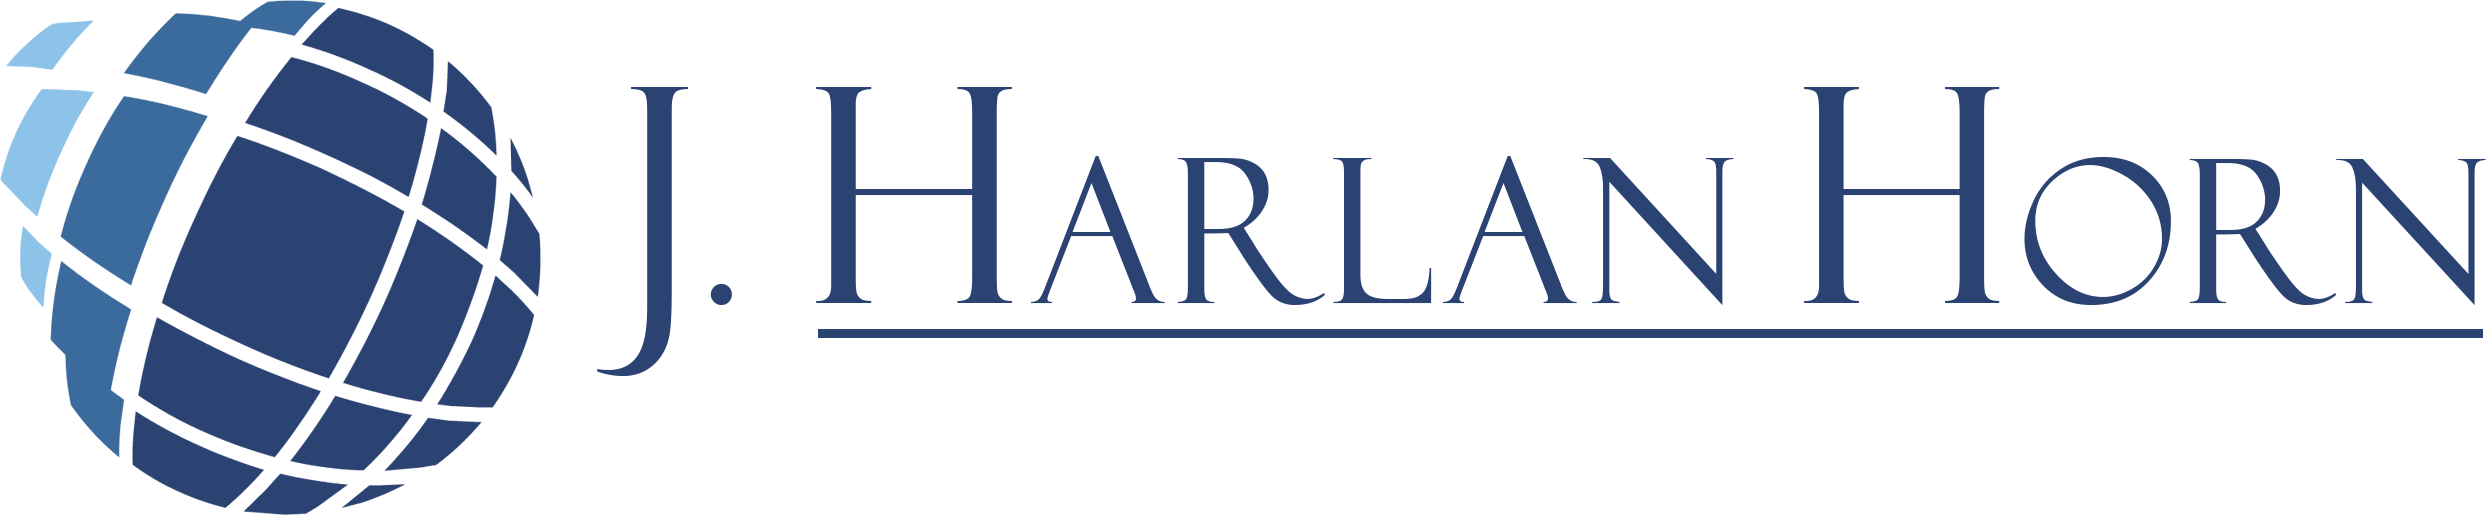 J Harlan Horn main logo